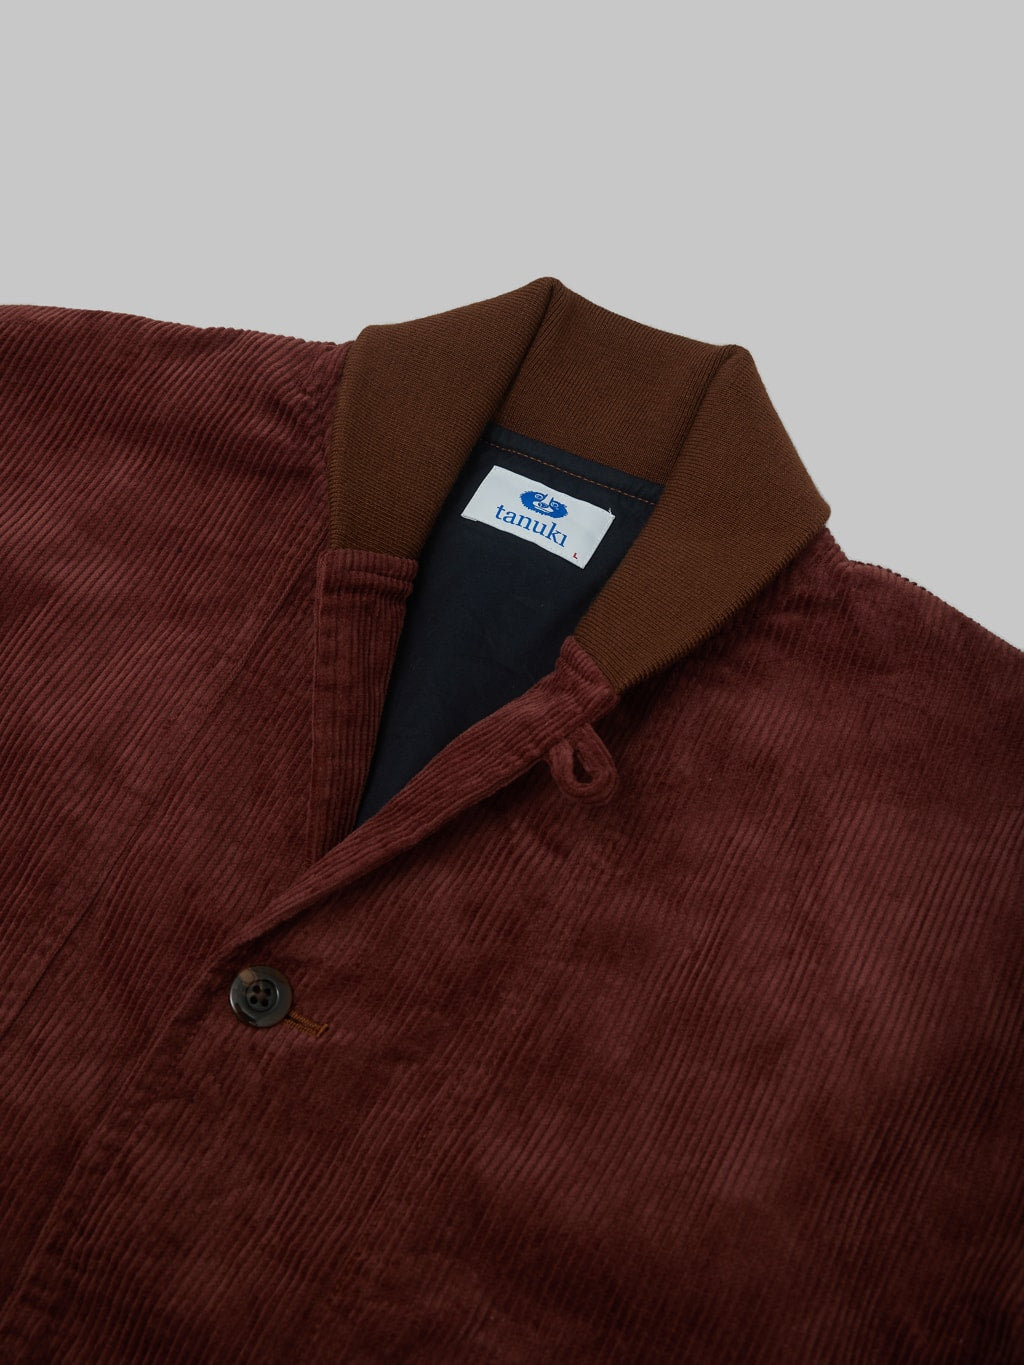 Tanuki Sazanami Corduro mud Dyed brown Jacket collar closeup